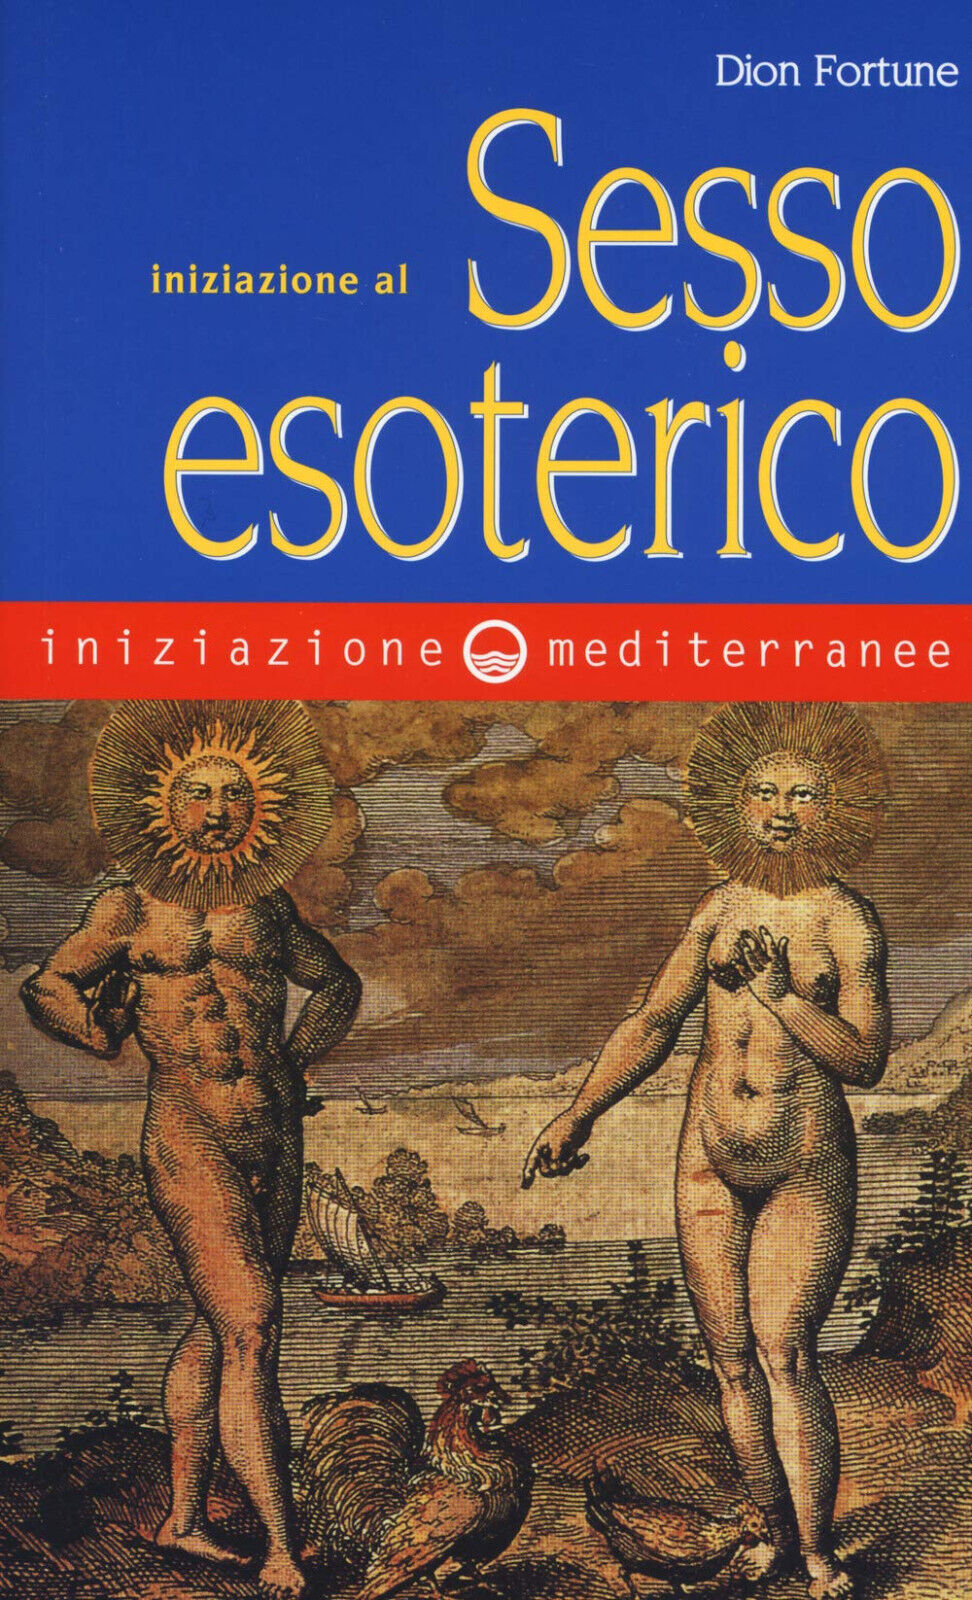 Iniziazione al sesso esoterico - Dion Fortune - Edizioni Mediterranee, 2019 libro usato